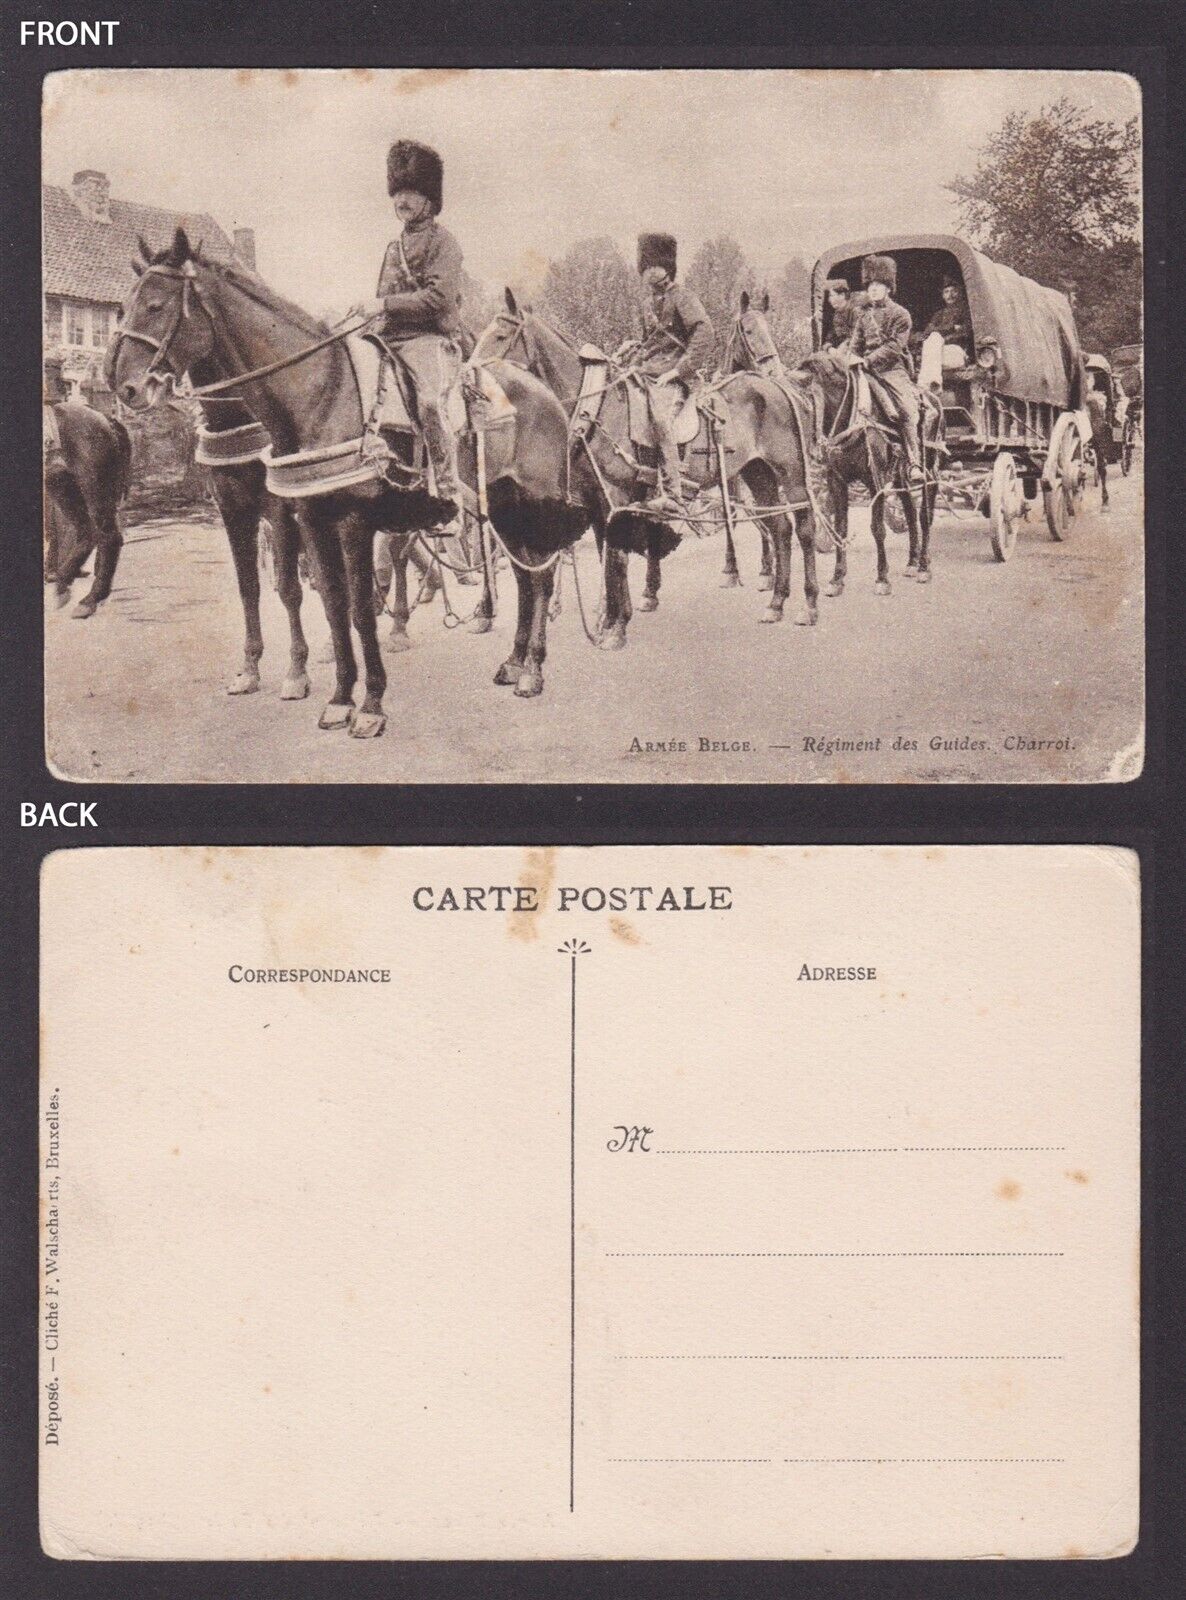 Vintage postcard, Armée belge, Régiment des Guides, Charroi, RPPC, WWI